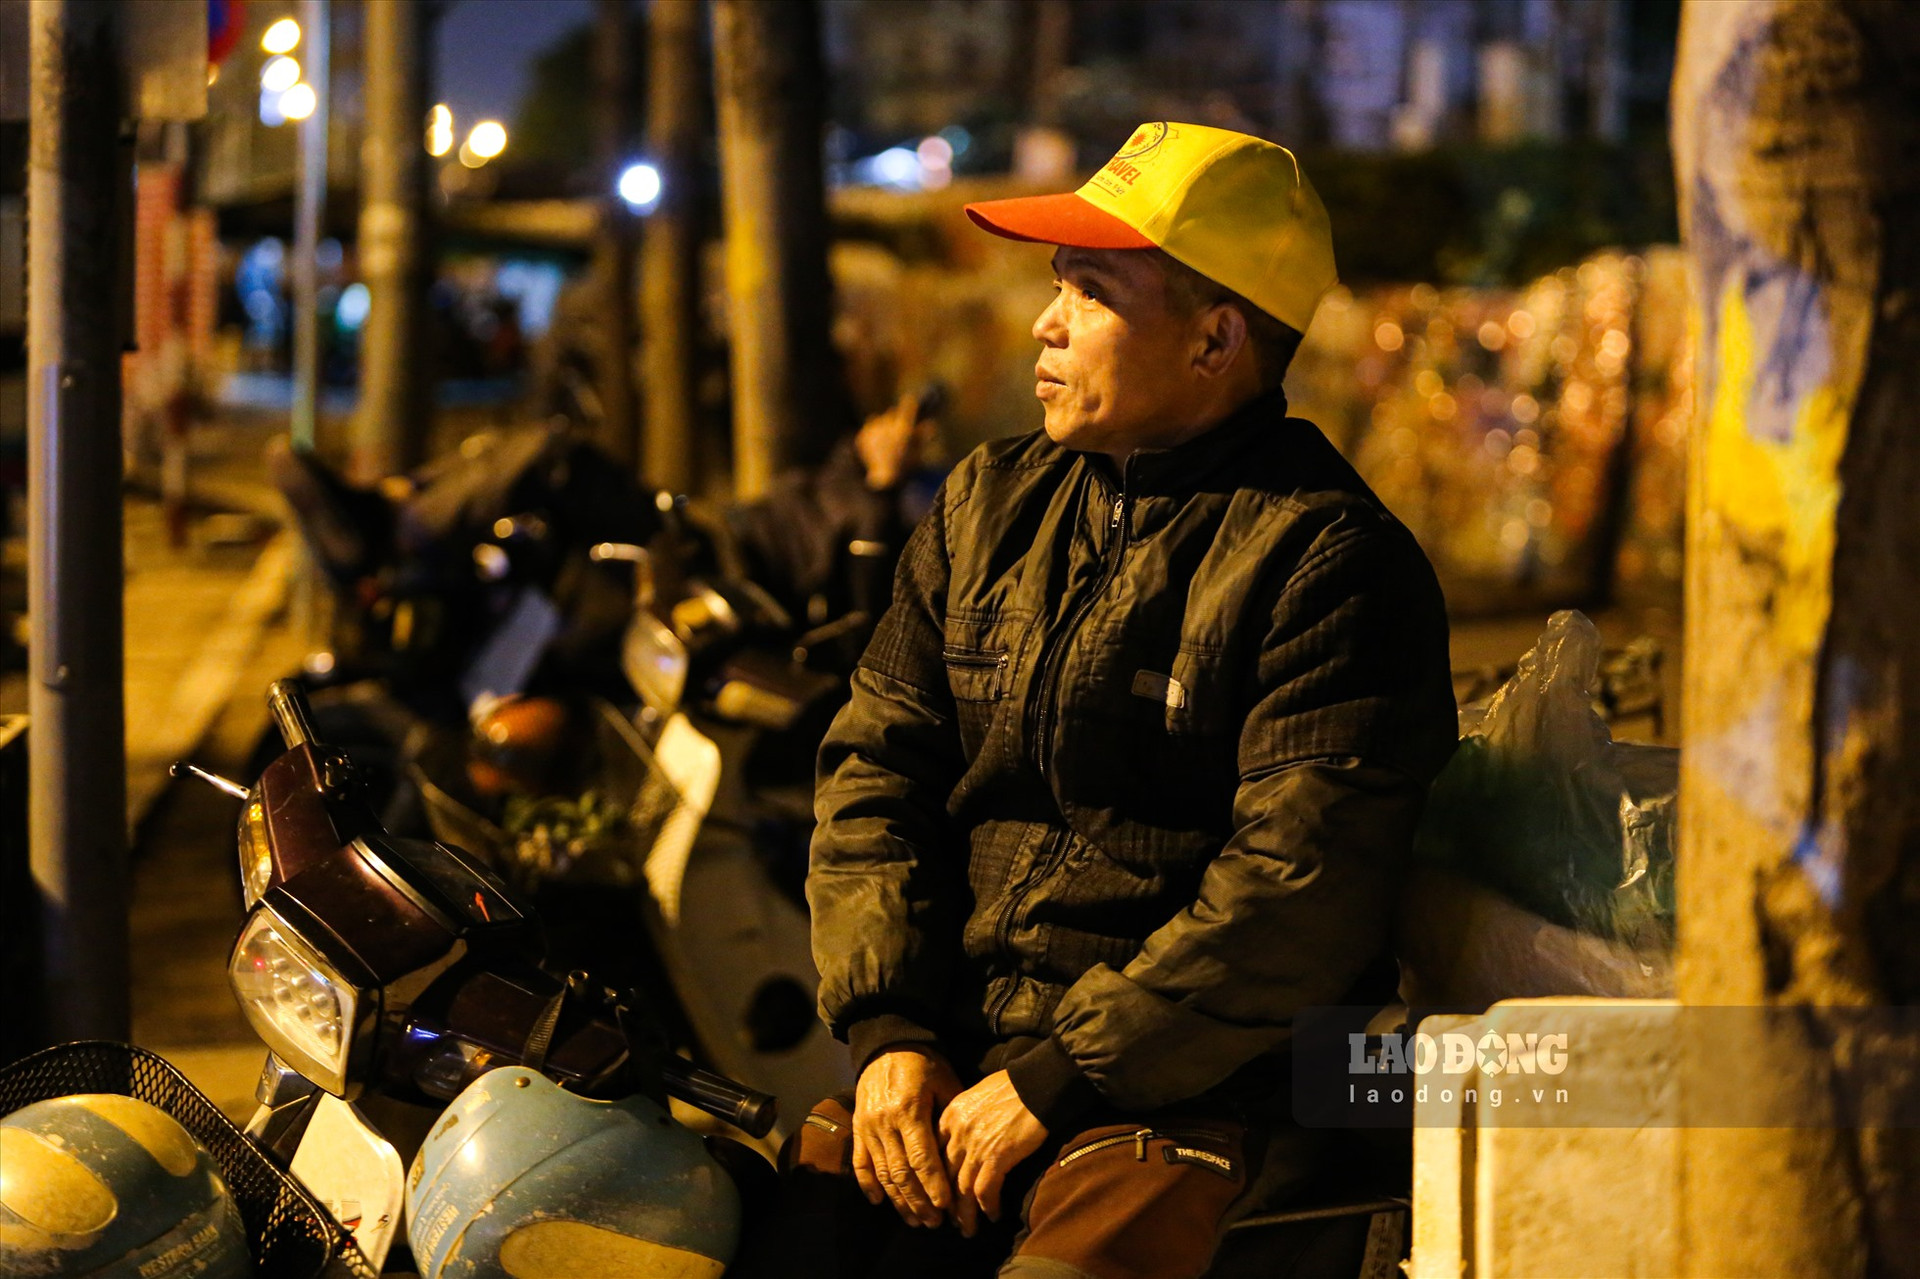 Ông Nguyễn Huy Chung (57 tuổi, Gia Lâm, Hà Nội) đang ngồi chờ đến 3 giờ sáng để chở hàng từ chợ Long Biên về Gia Lâm. “Trời rét đột ngột như thế này khiến tôi rất mệt, trong người run lẩy bẩy“, ông Chung cho hay.